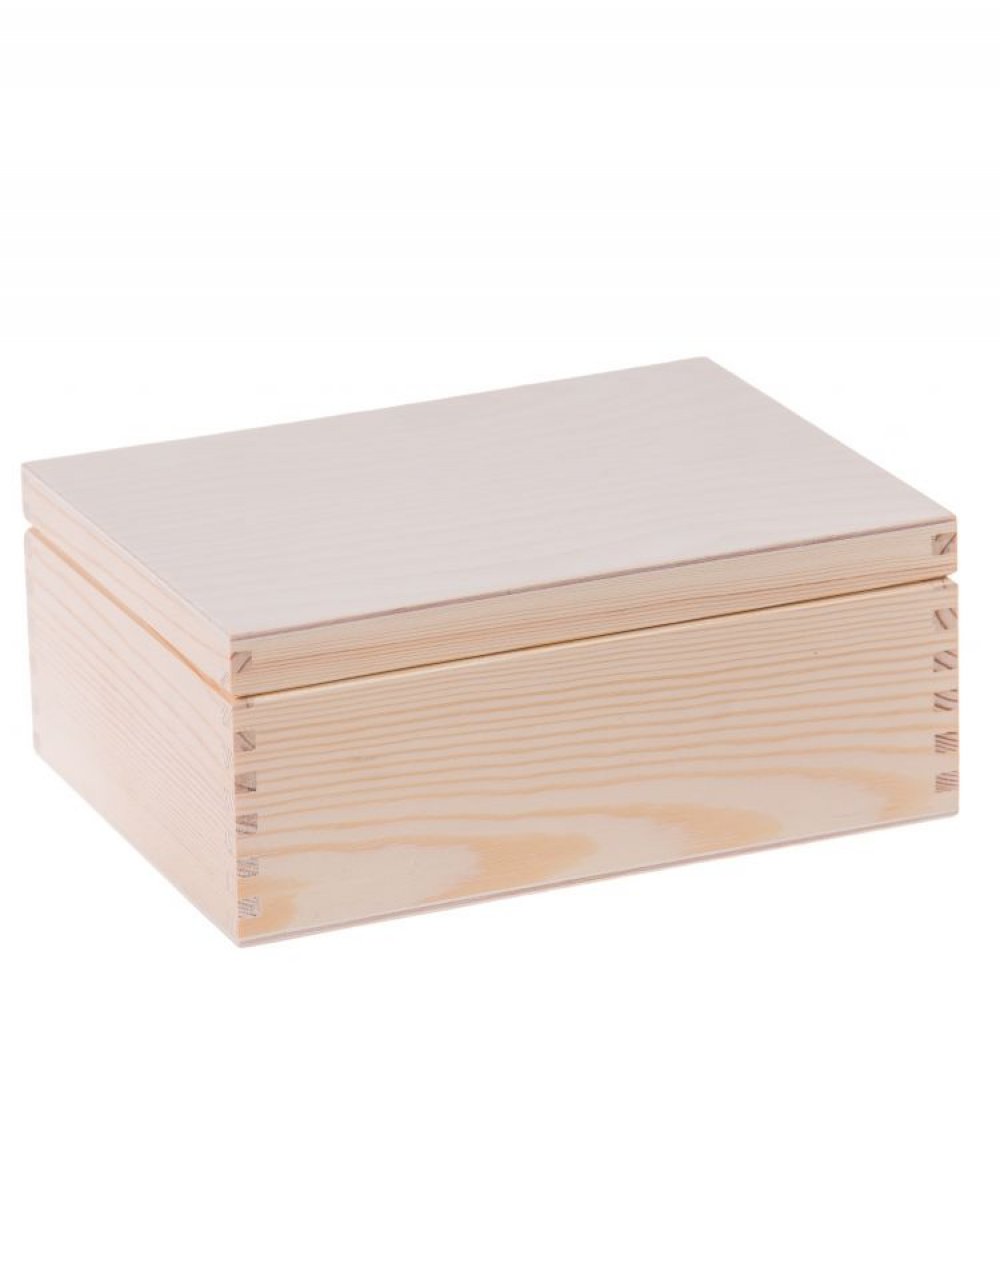 Sada víceúčelových dřevěných krabiček 4v1 - obdélníkové